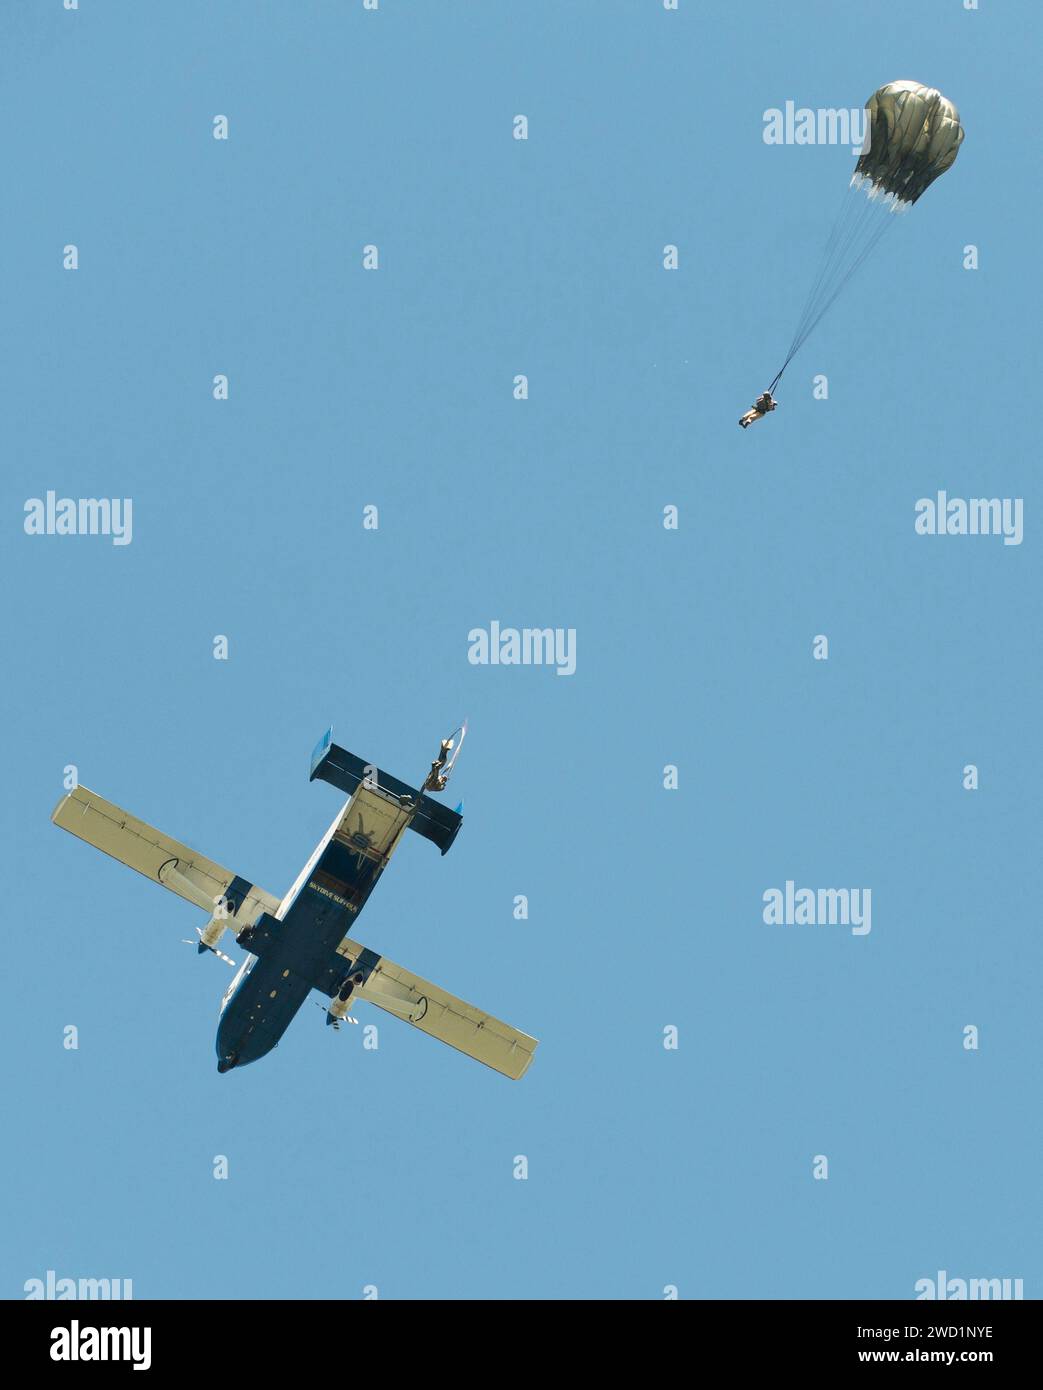 Les techniciens en élimination d'explosifs et de munitions quittent un avion SC-7 Skyvan pendant une formation statique en chute libre en ligne. Banque D'Images